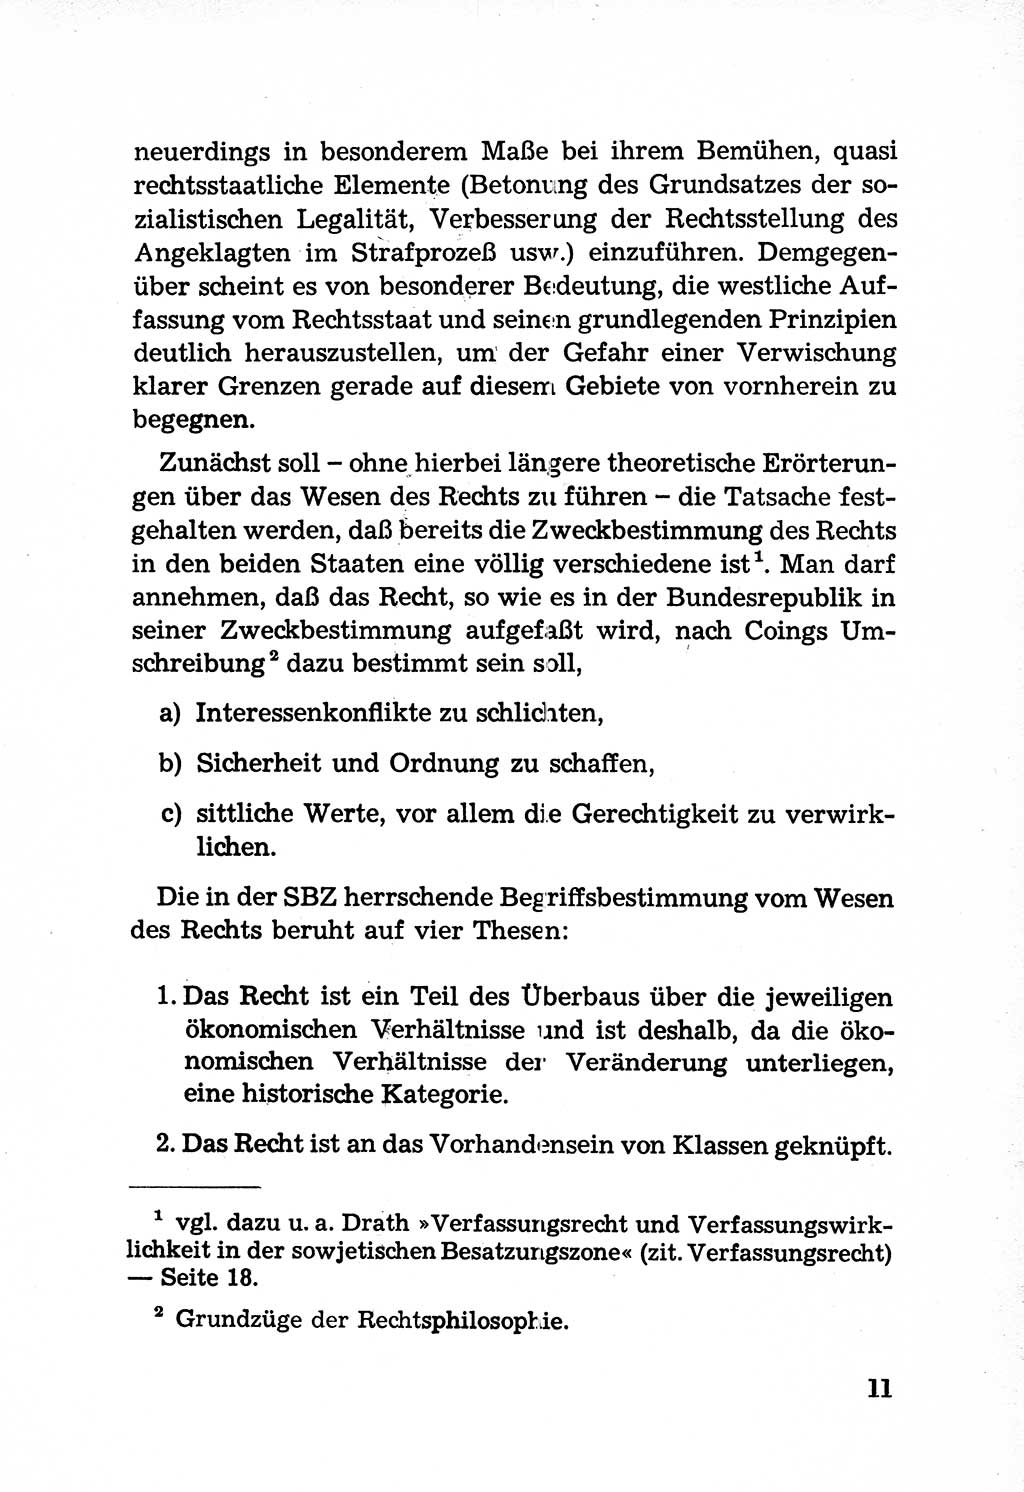 Rechtsstaat in zweierlei Hinsicht, UntersuchungsausschuÃŸ freiheitlicher Juristen (UfJ) [Bundesrepublik Deutschland (BRD)] 1956, Seite 11 (R.-St. UfJ BRD 1956, S. 11)